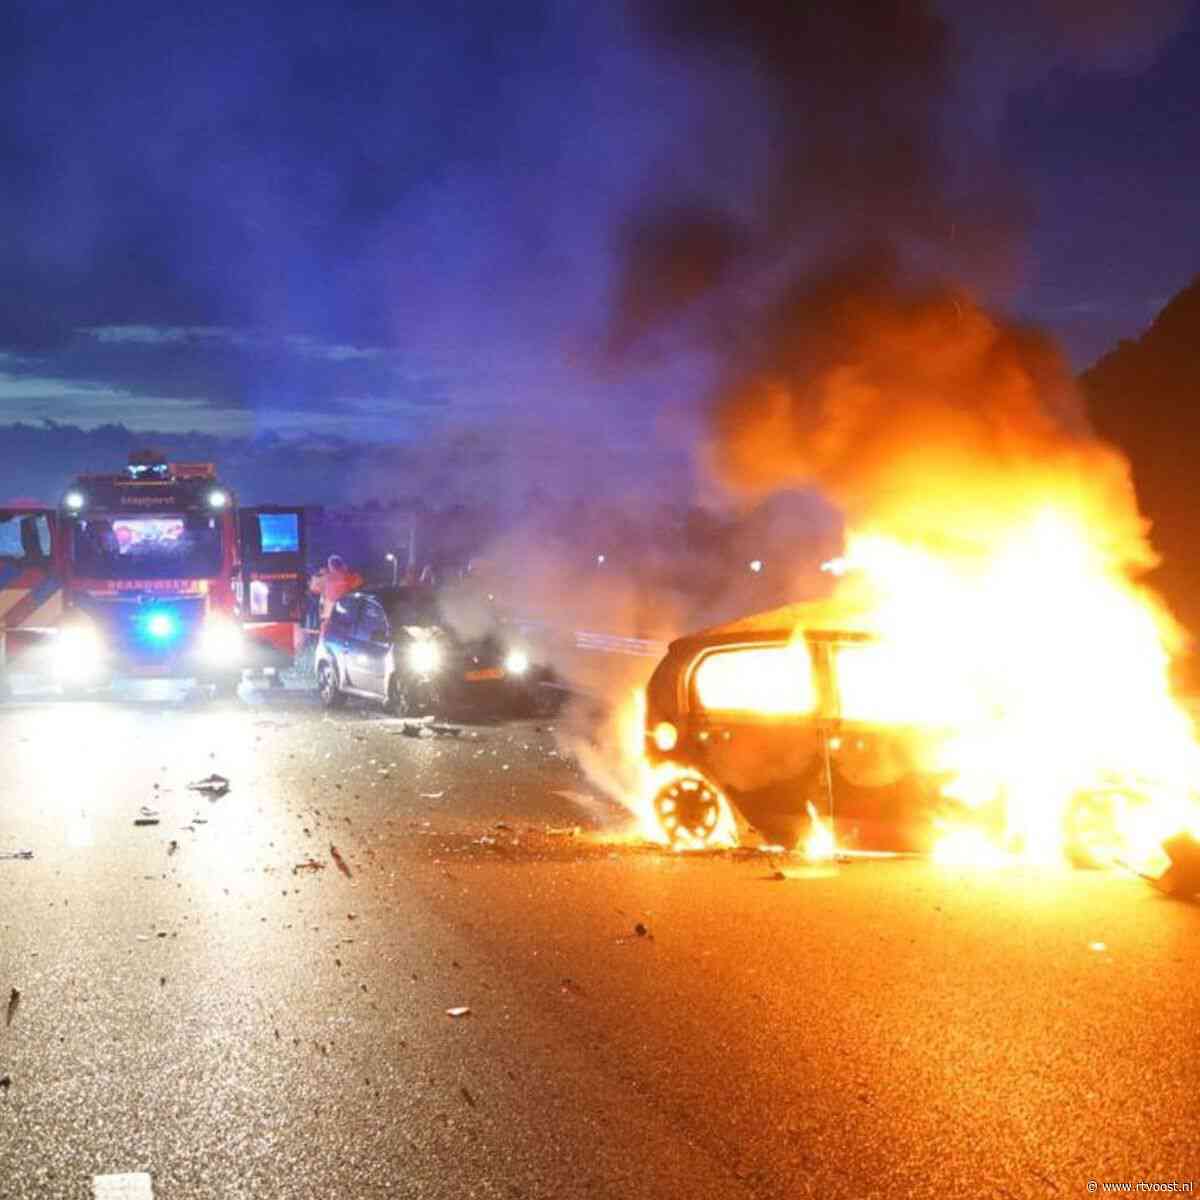 112 nieuws: Auto vliegt in brand na ongeval op snelweg, hond overleden